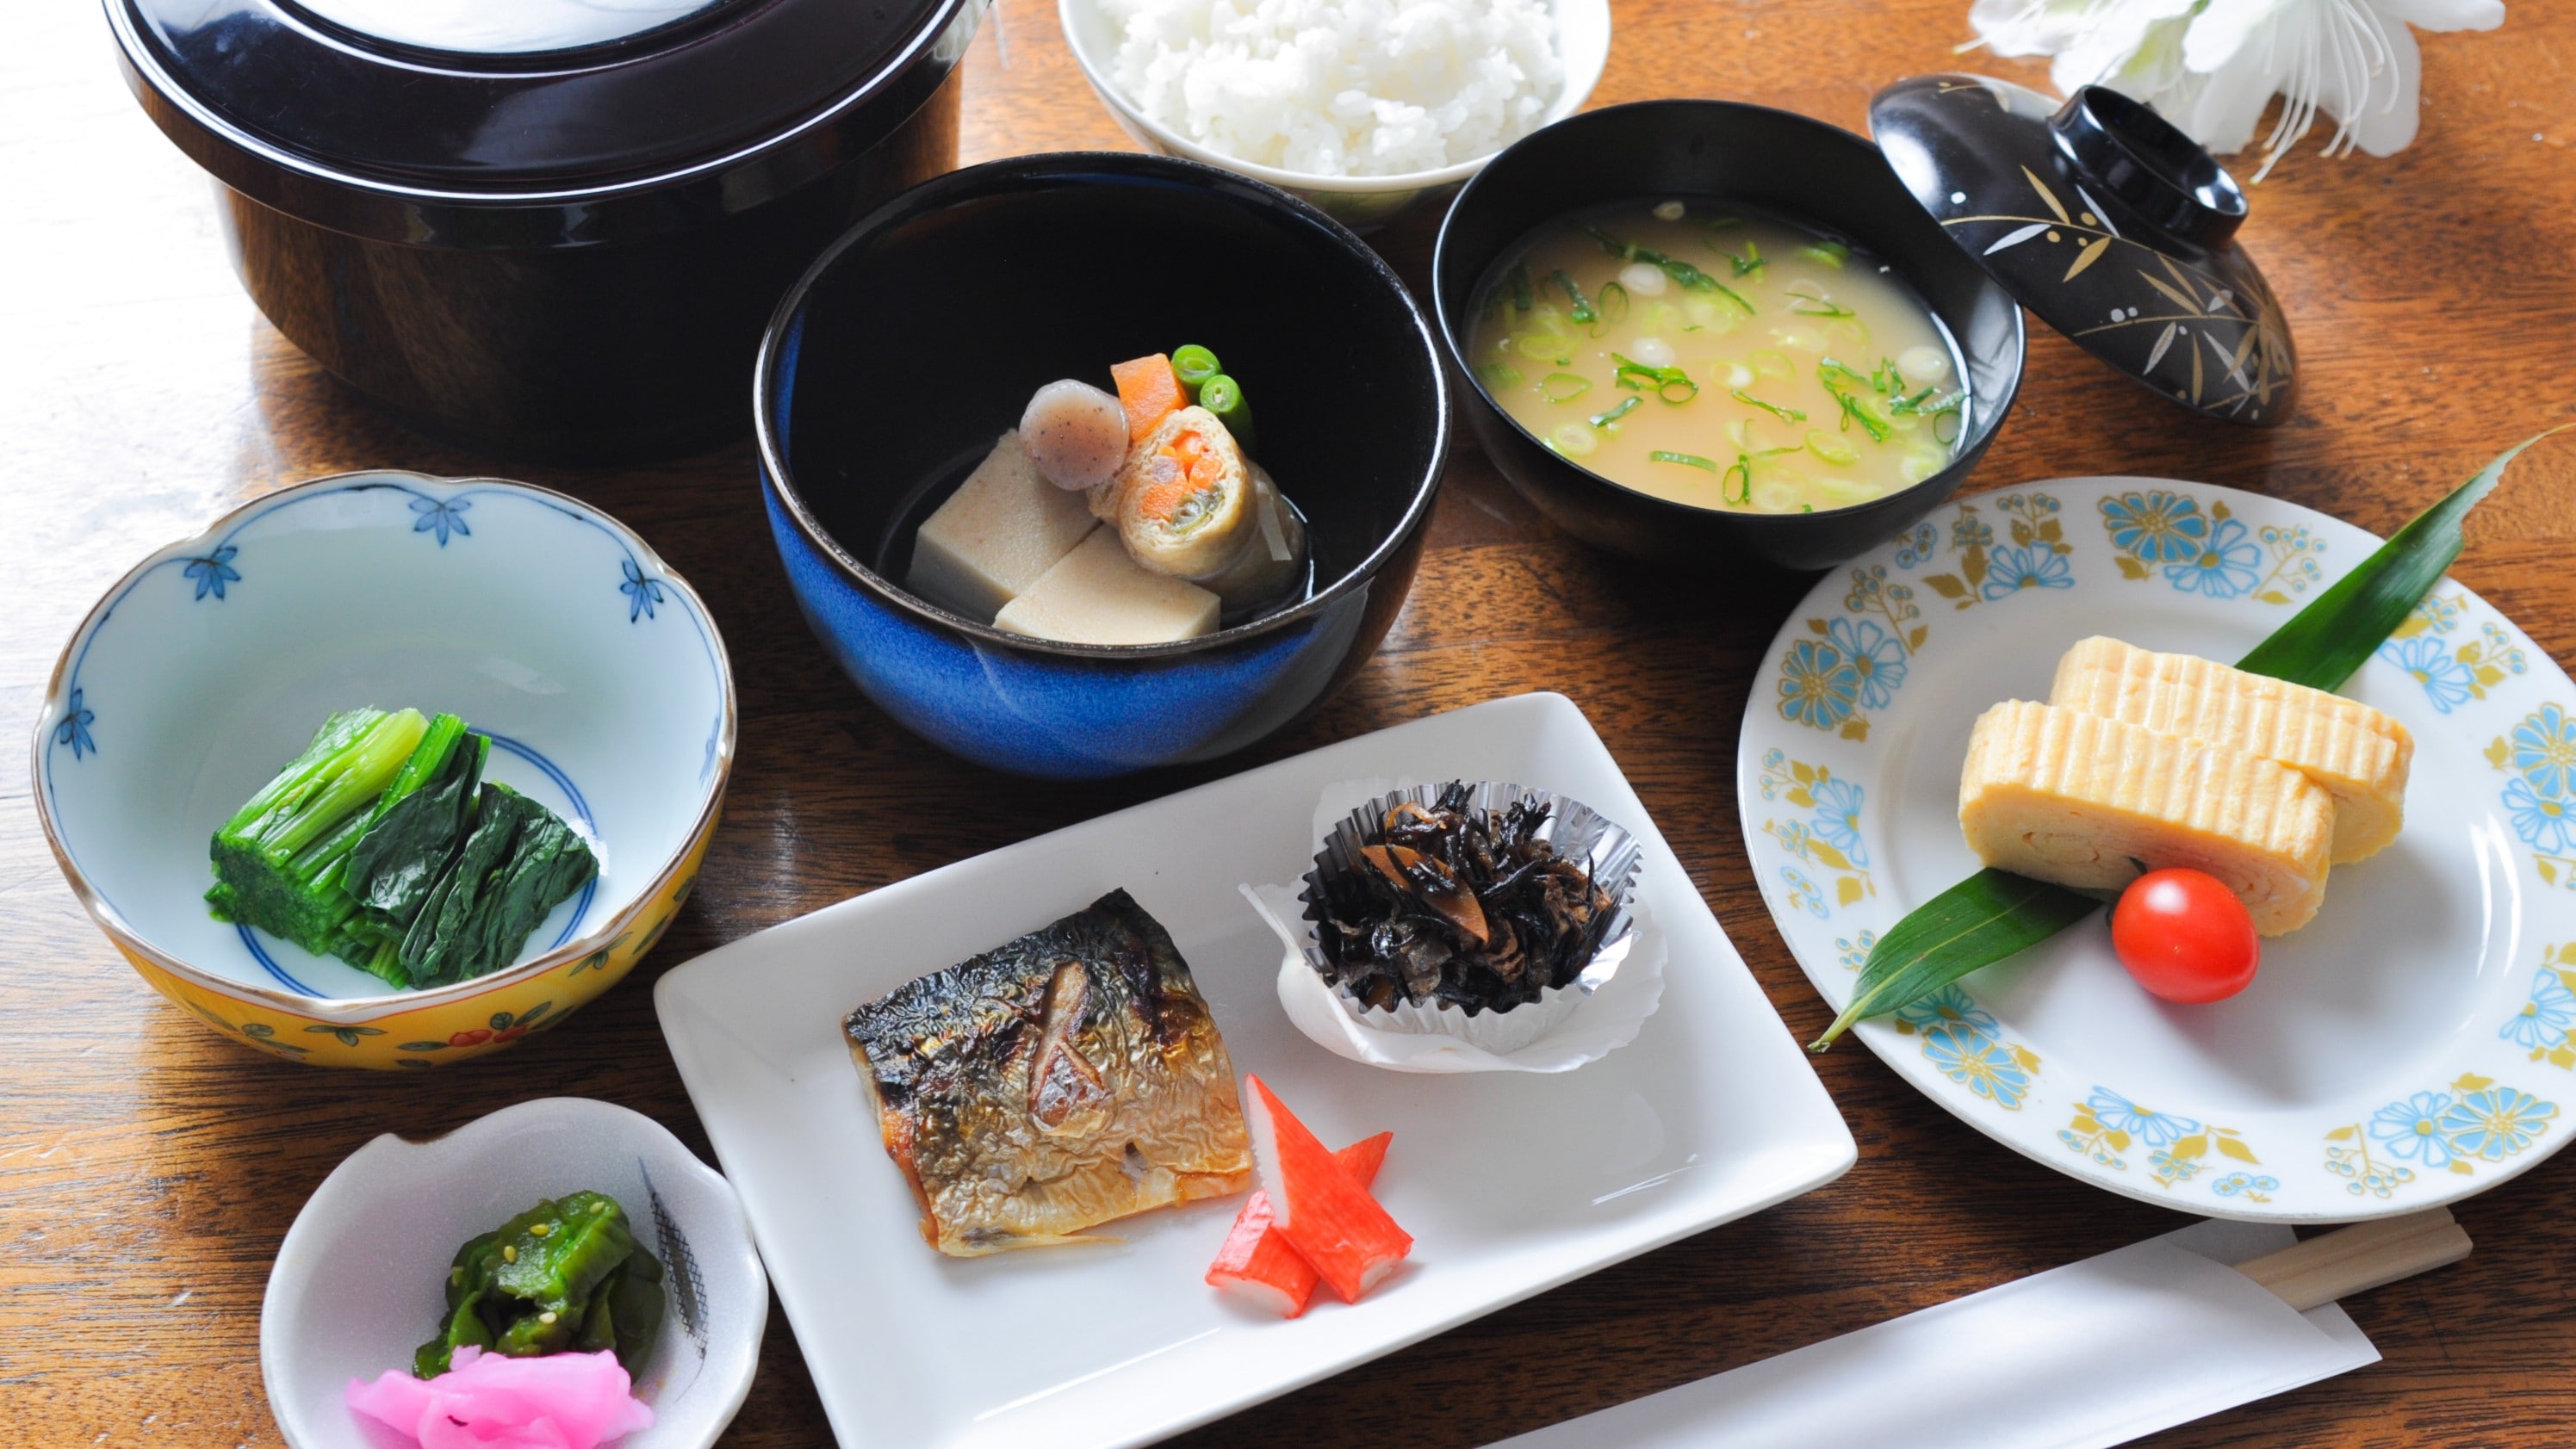 인기 일본식 아침 식사, 계란 구이, 고등어 소금 구이, 기타